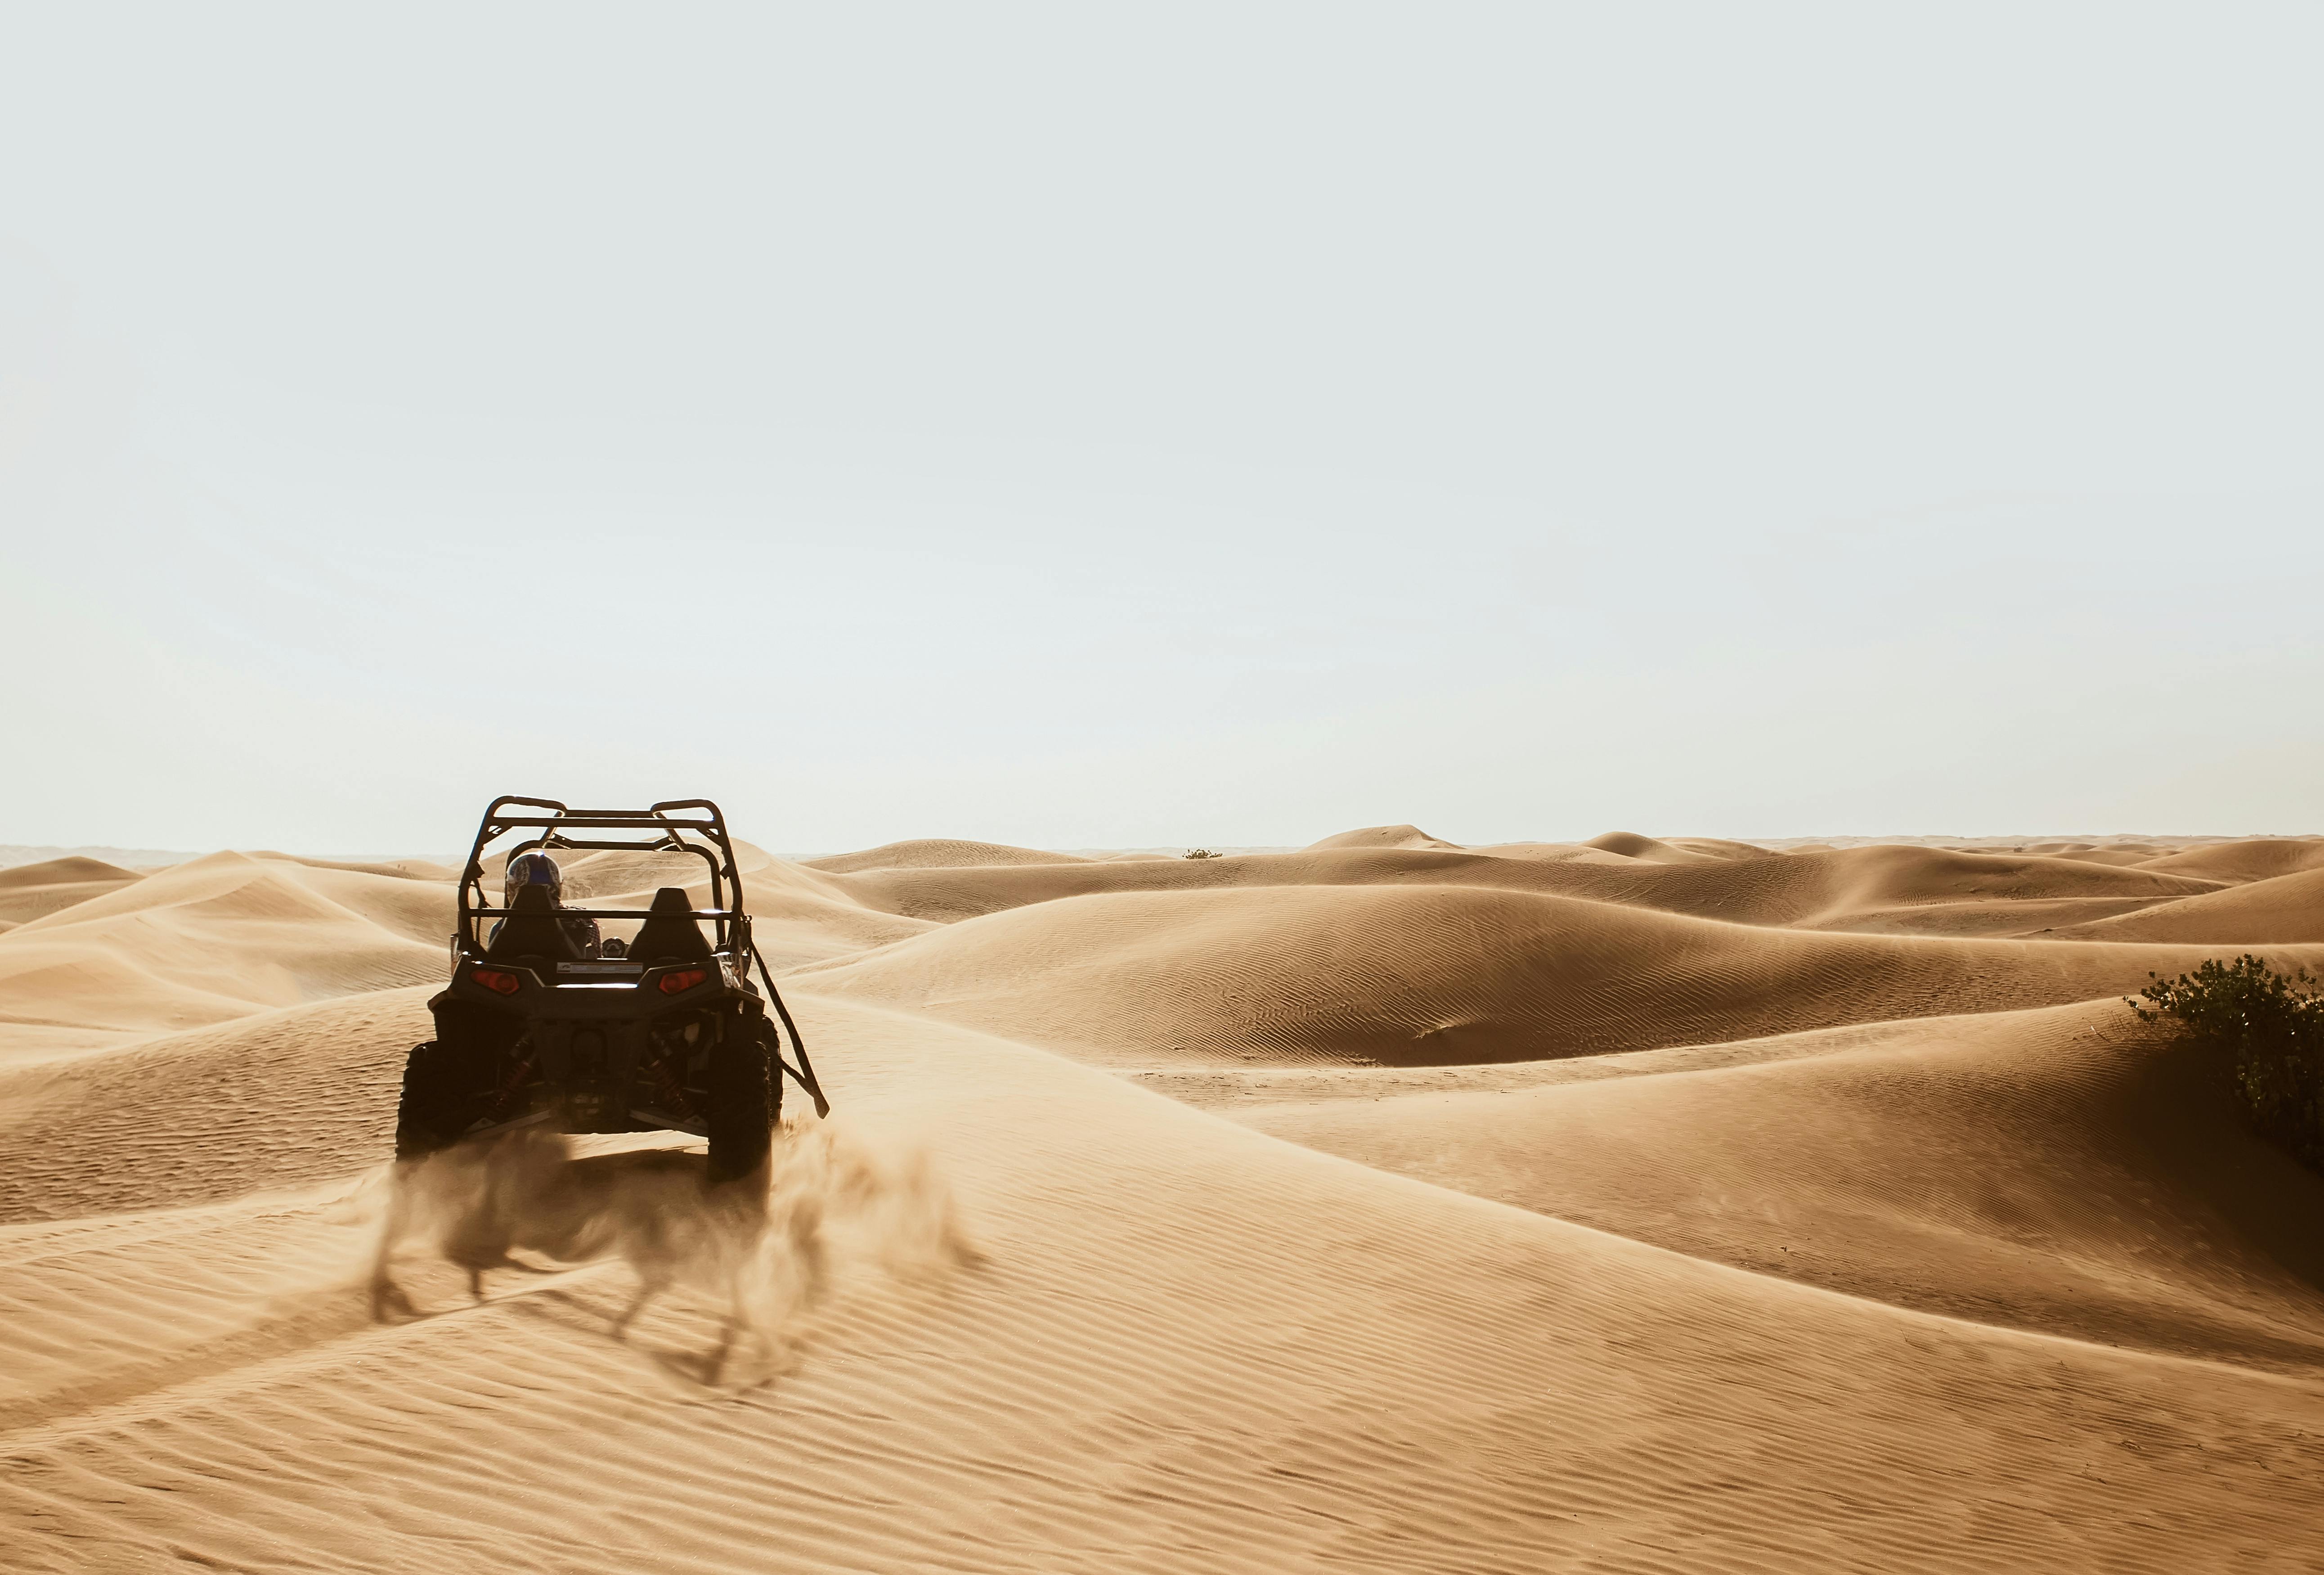 Biglietti per il giro in buggy Dubai Red Dunes